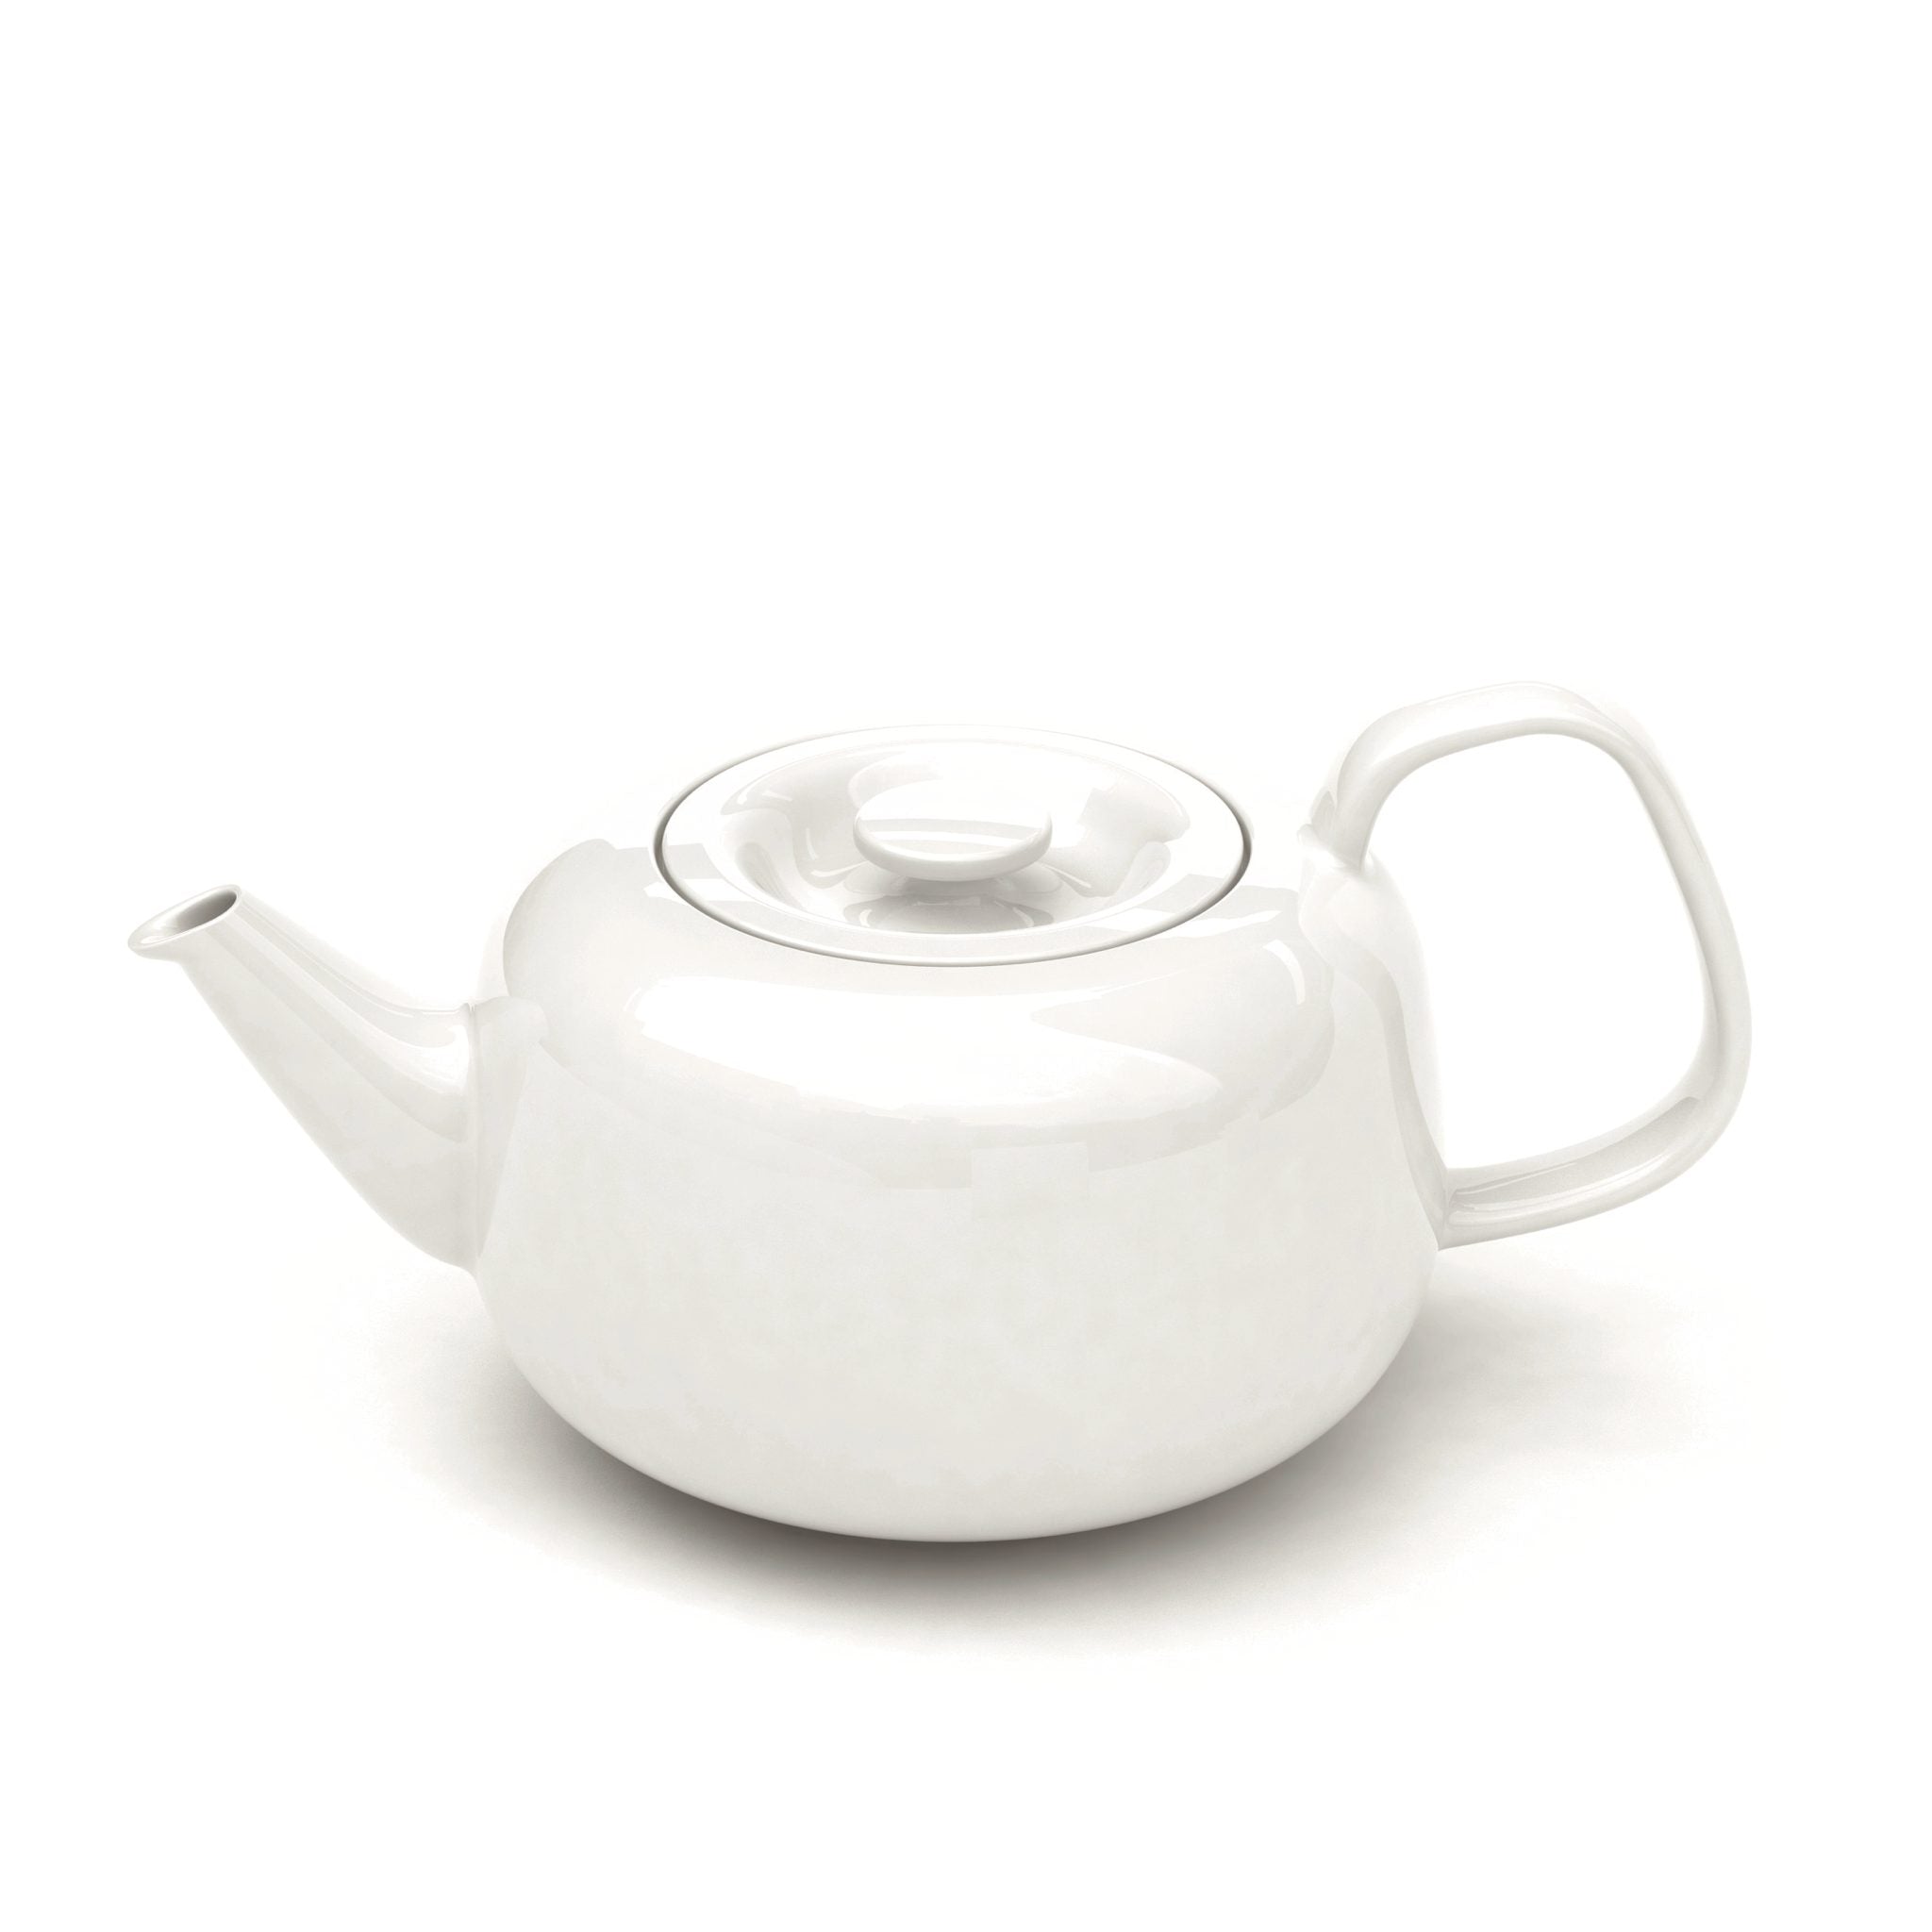 Raami Teapot by Iittala